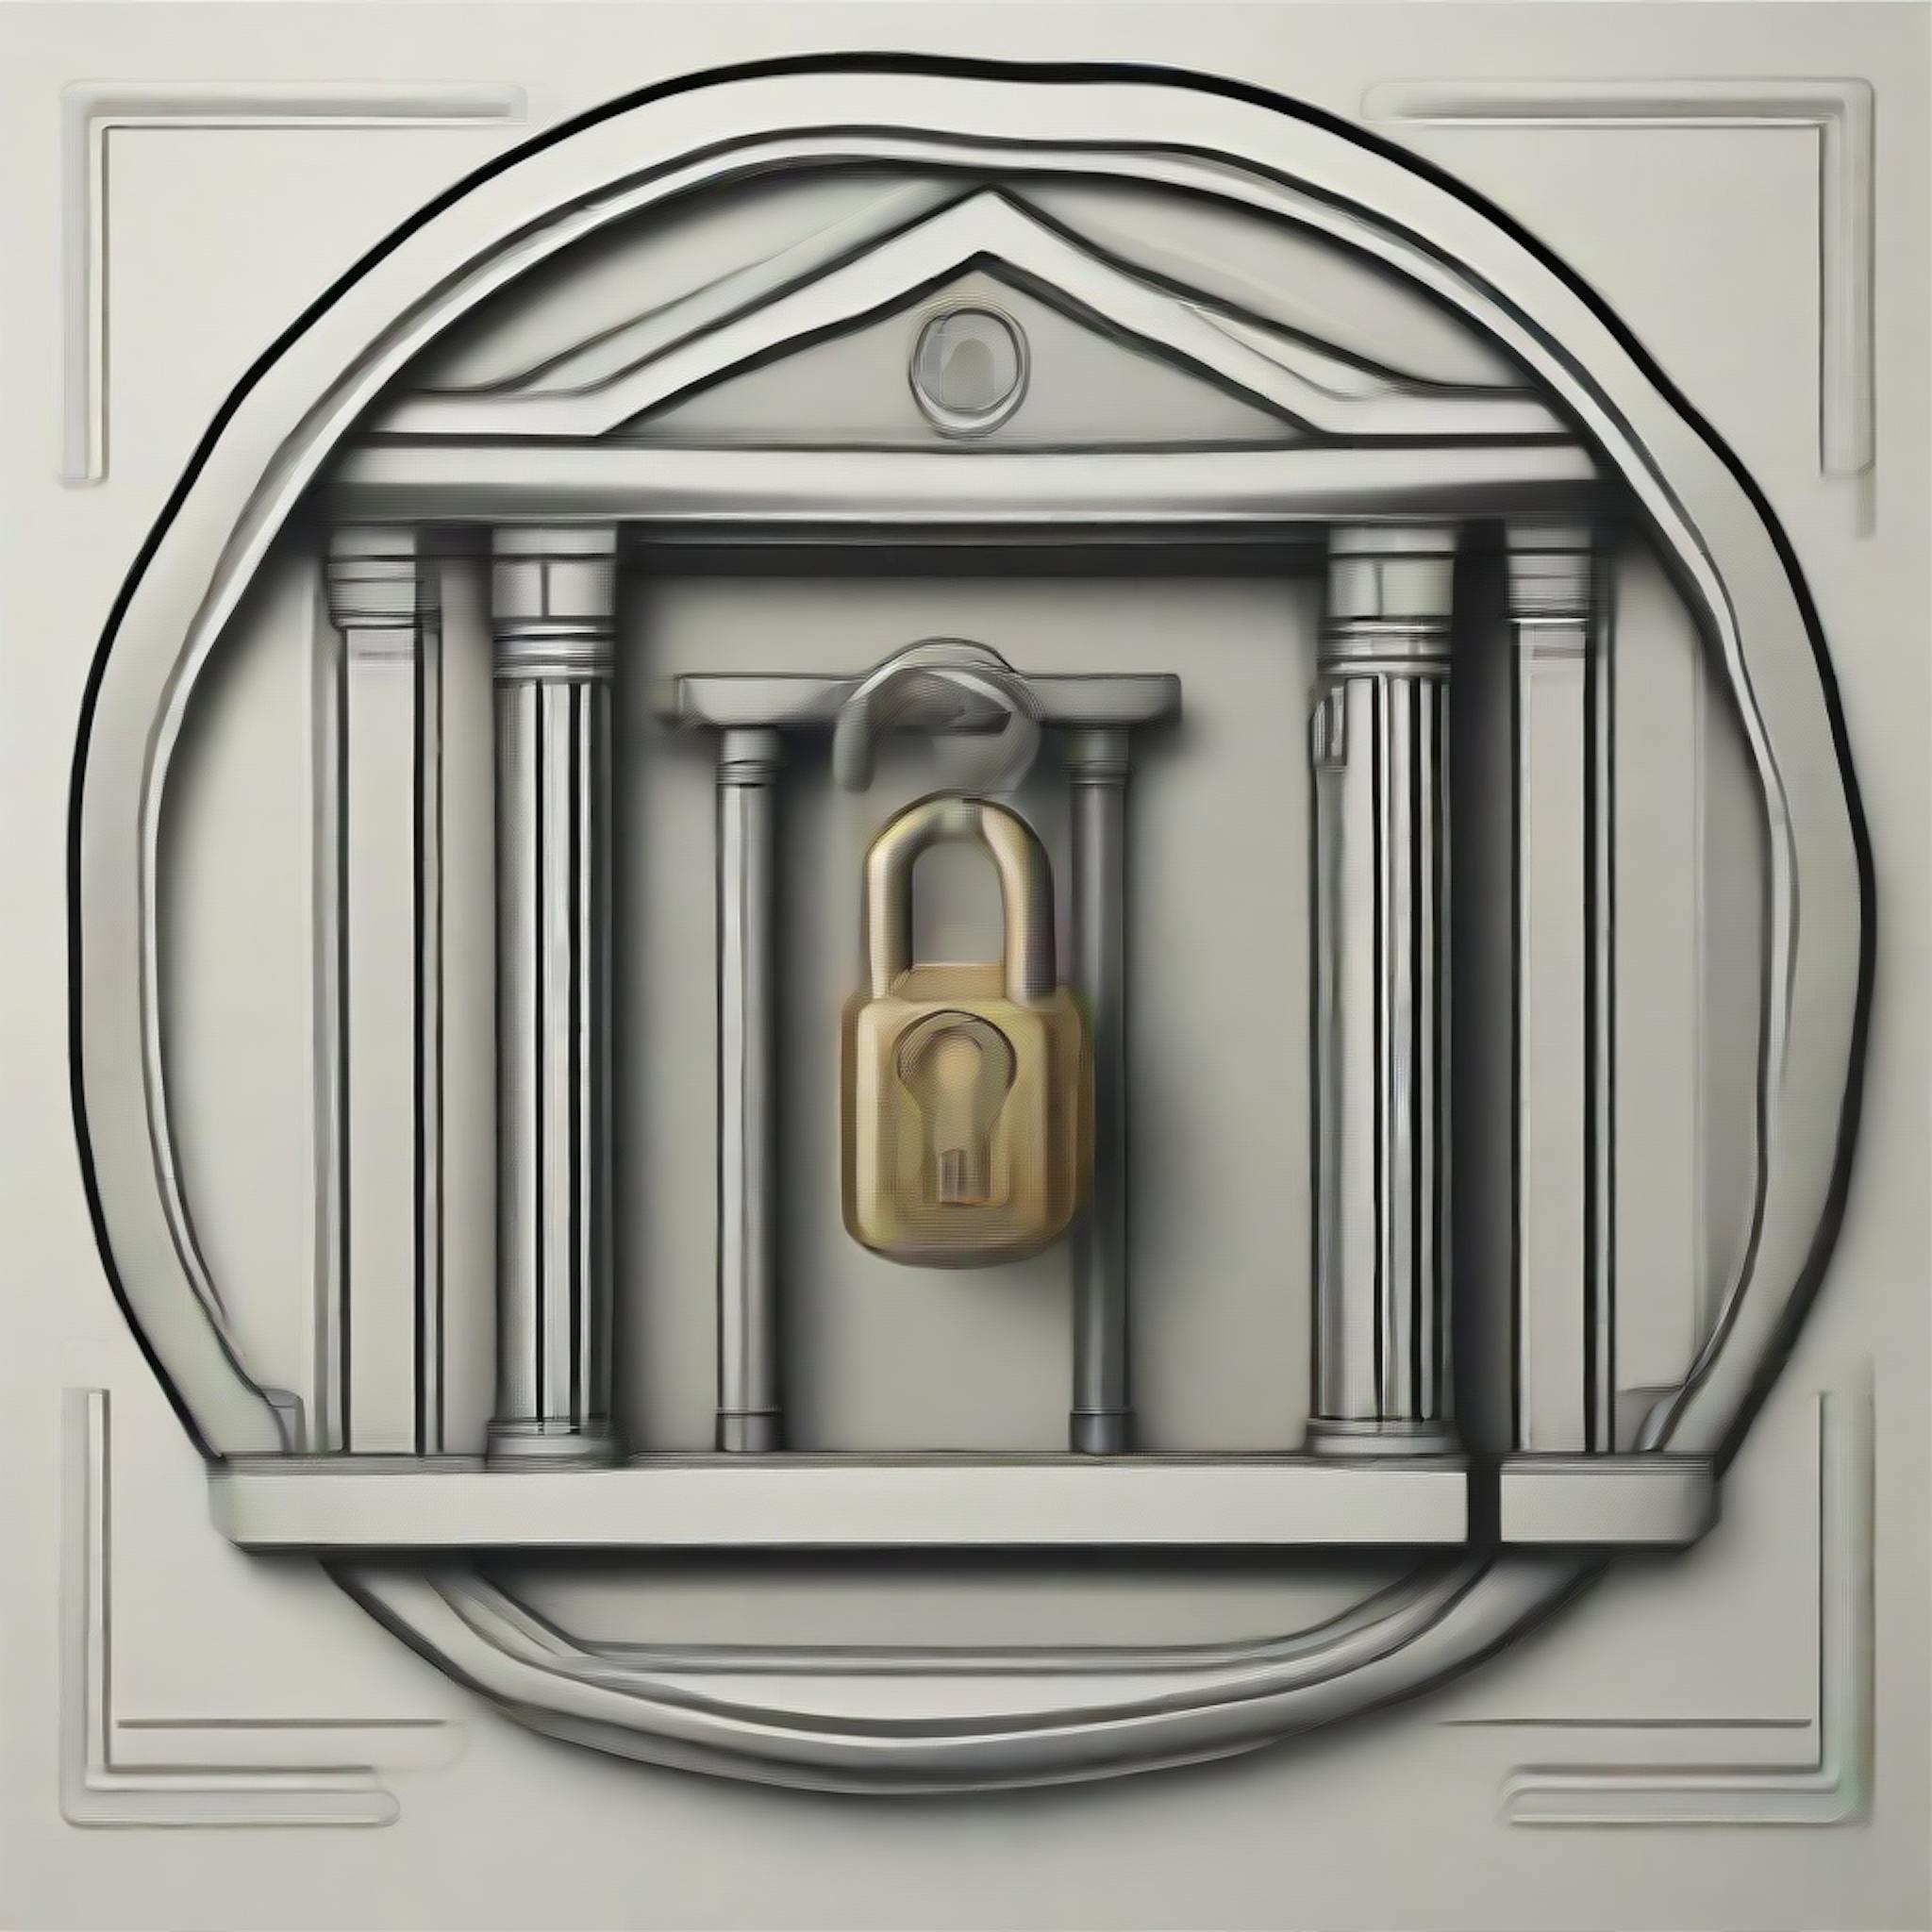 featured image - Was ist Cloud-Sicherheit im Bankwesen?